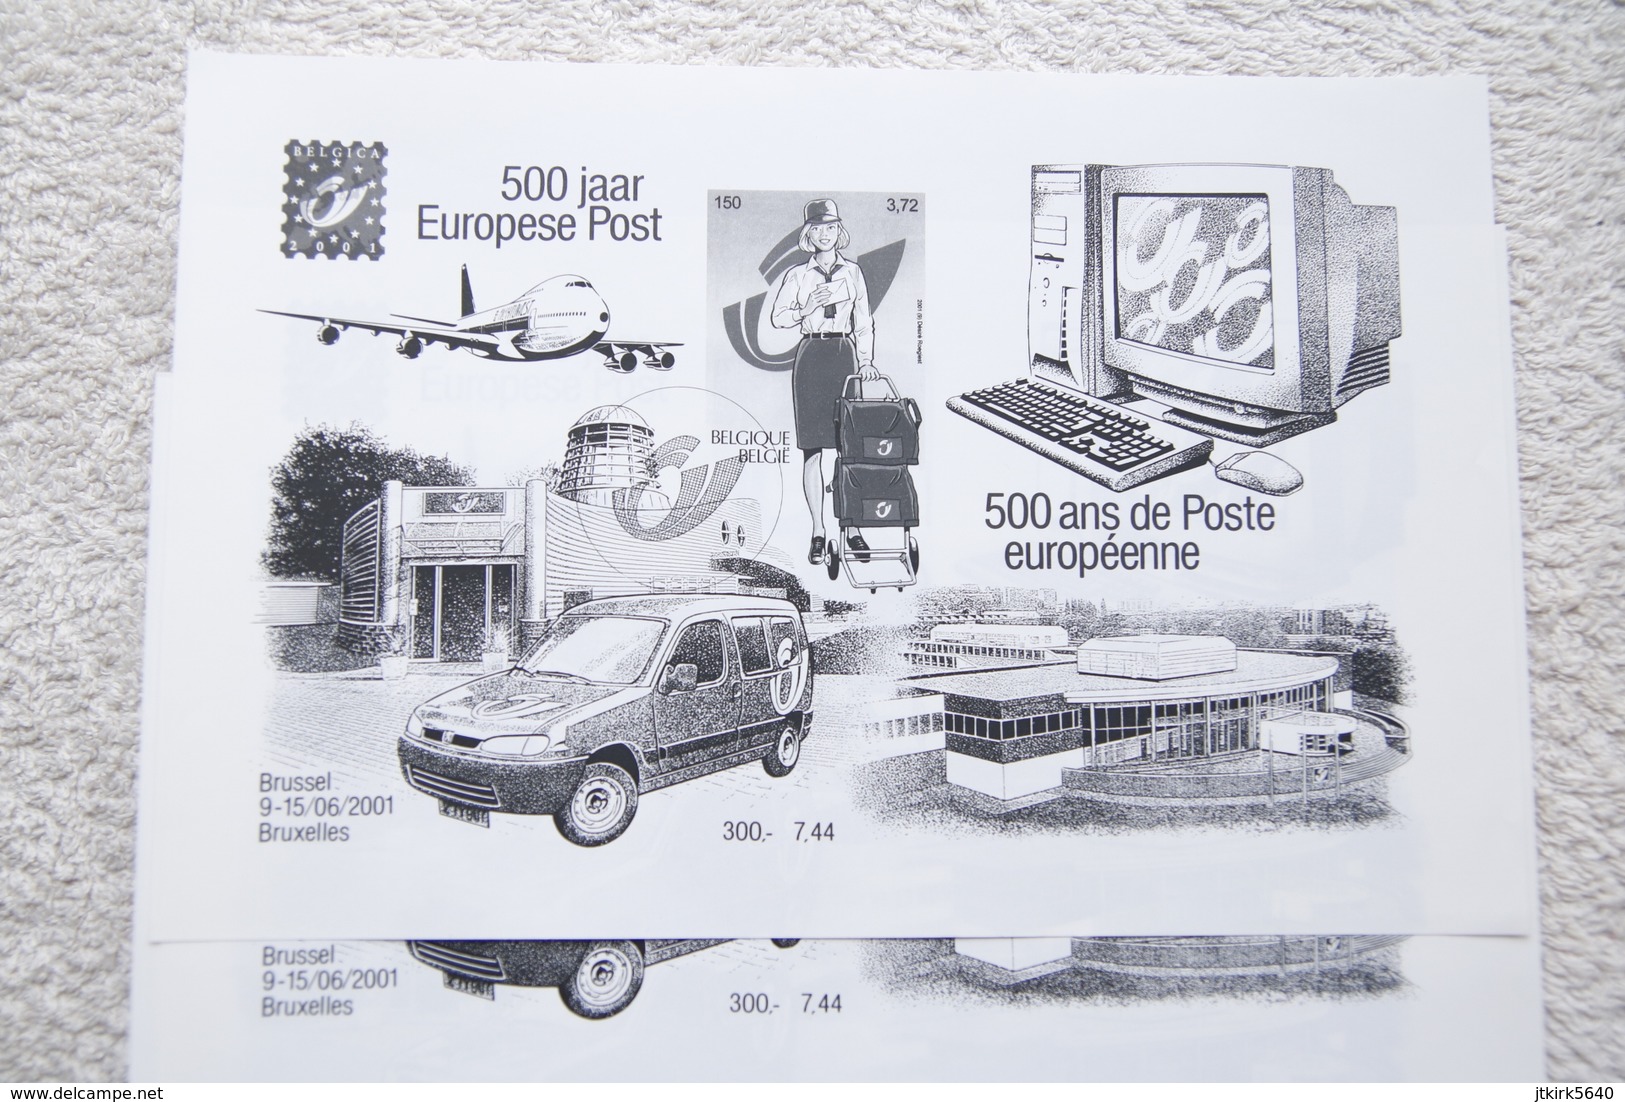 5 Feuillets Noir Et Blanc "500 Ans De Poste Européenne" (COB/OBP 3001) Belgica 2001. - Feuillets N&B Offerts Par La Poste [ZN & GC]